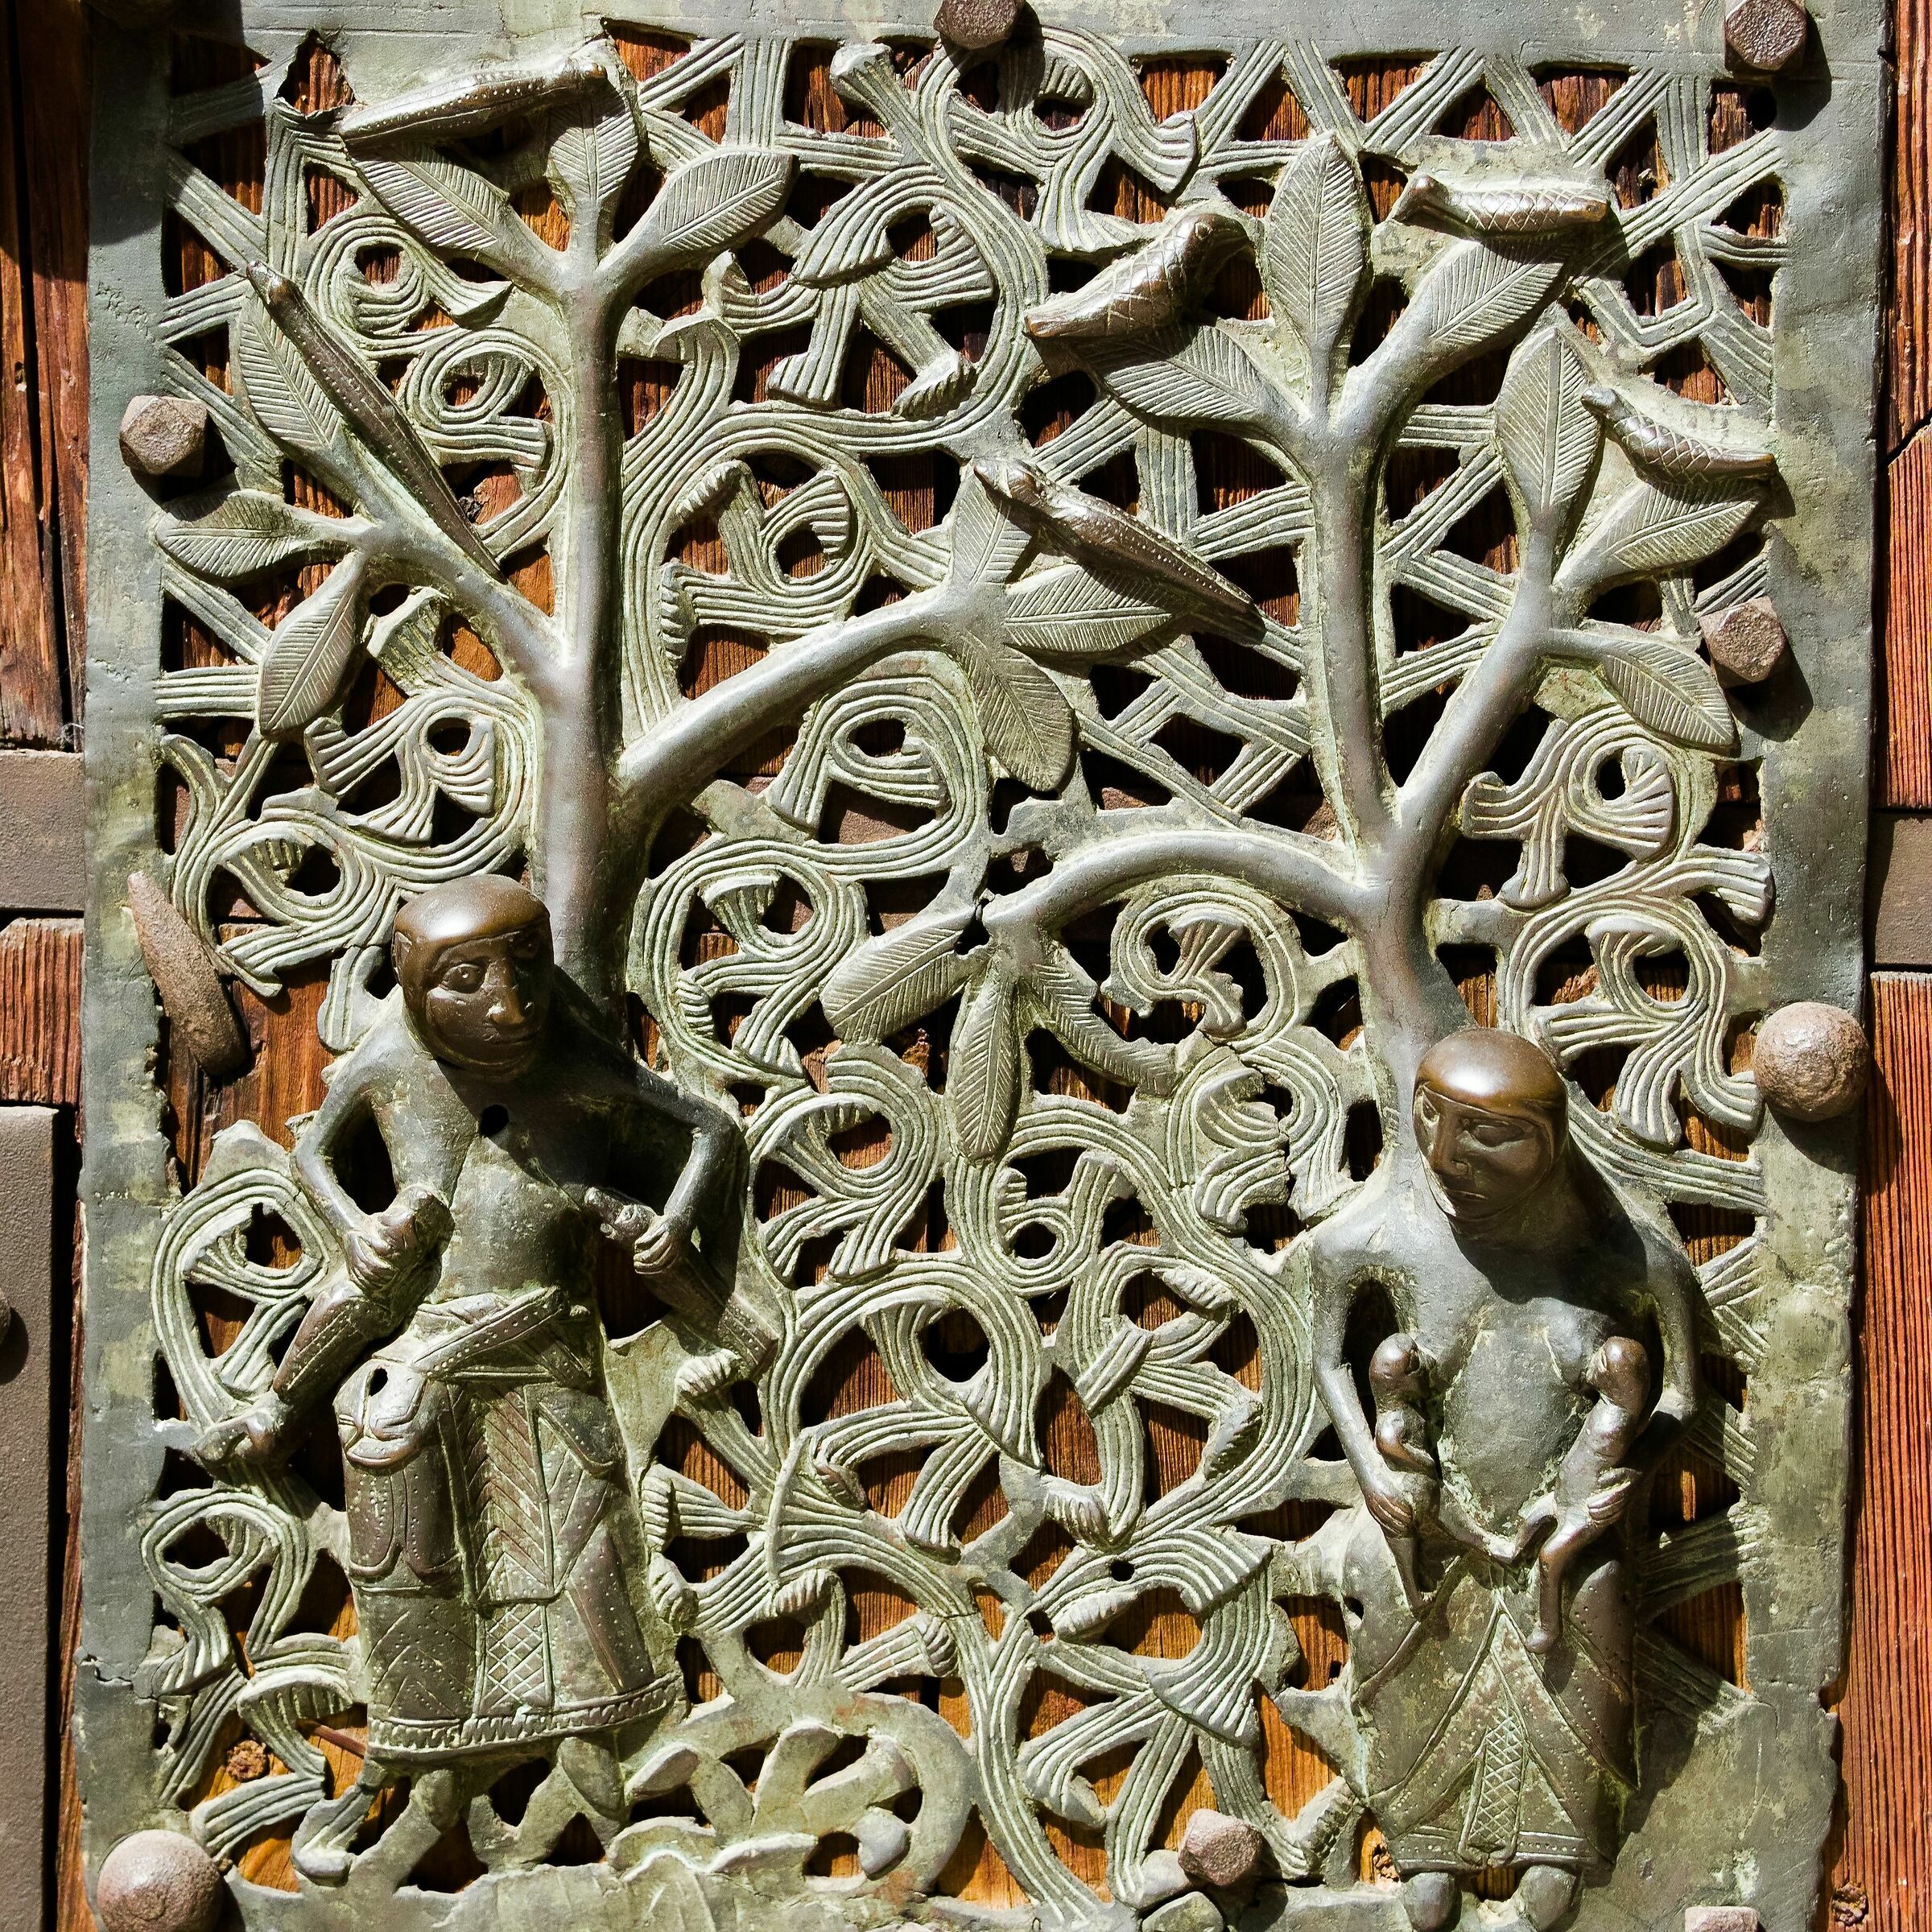 "The progenitors" of the bronze door of San Zeno...